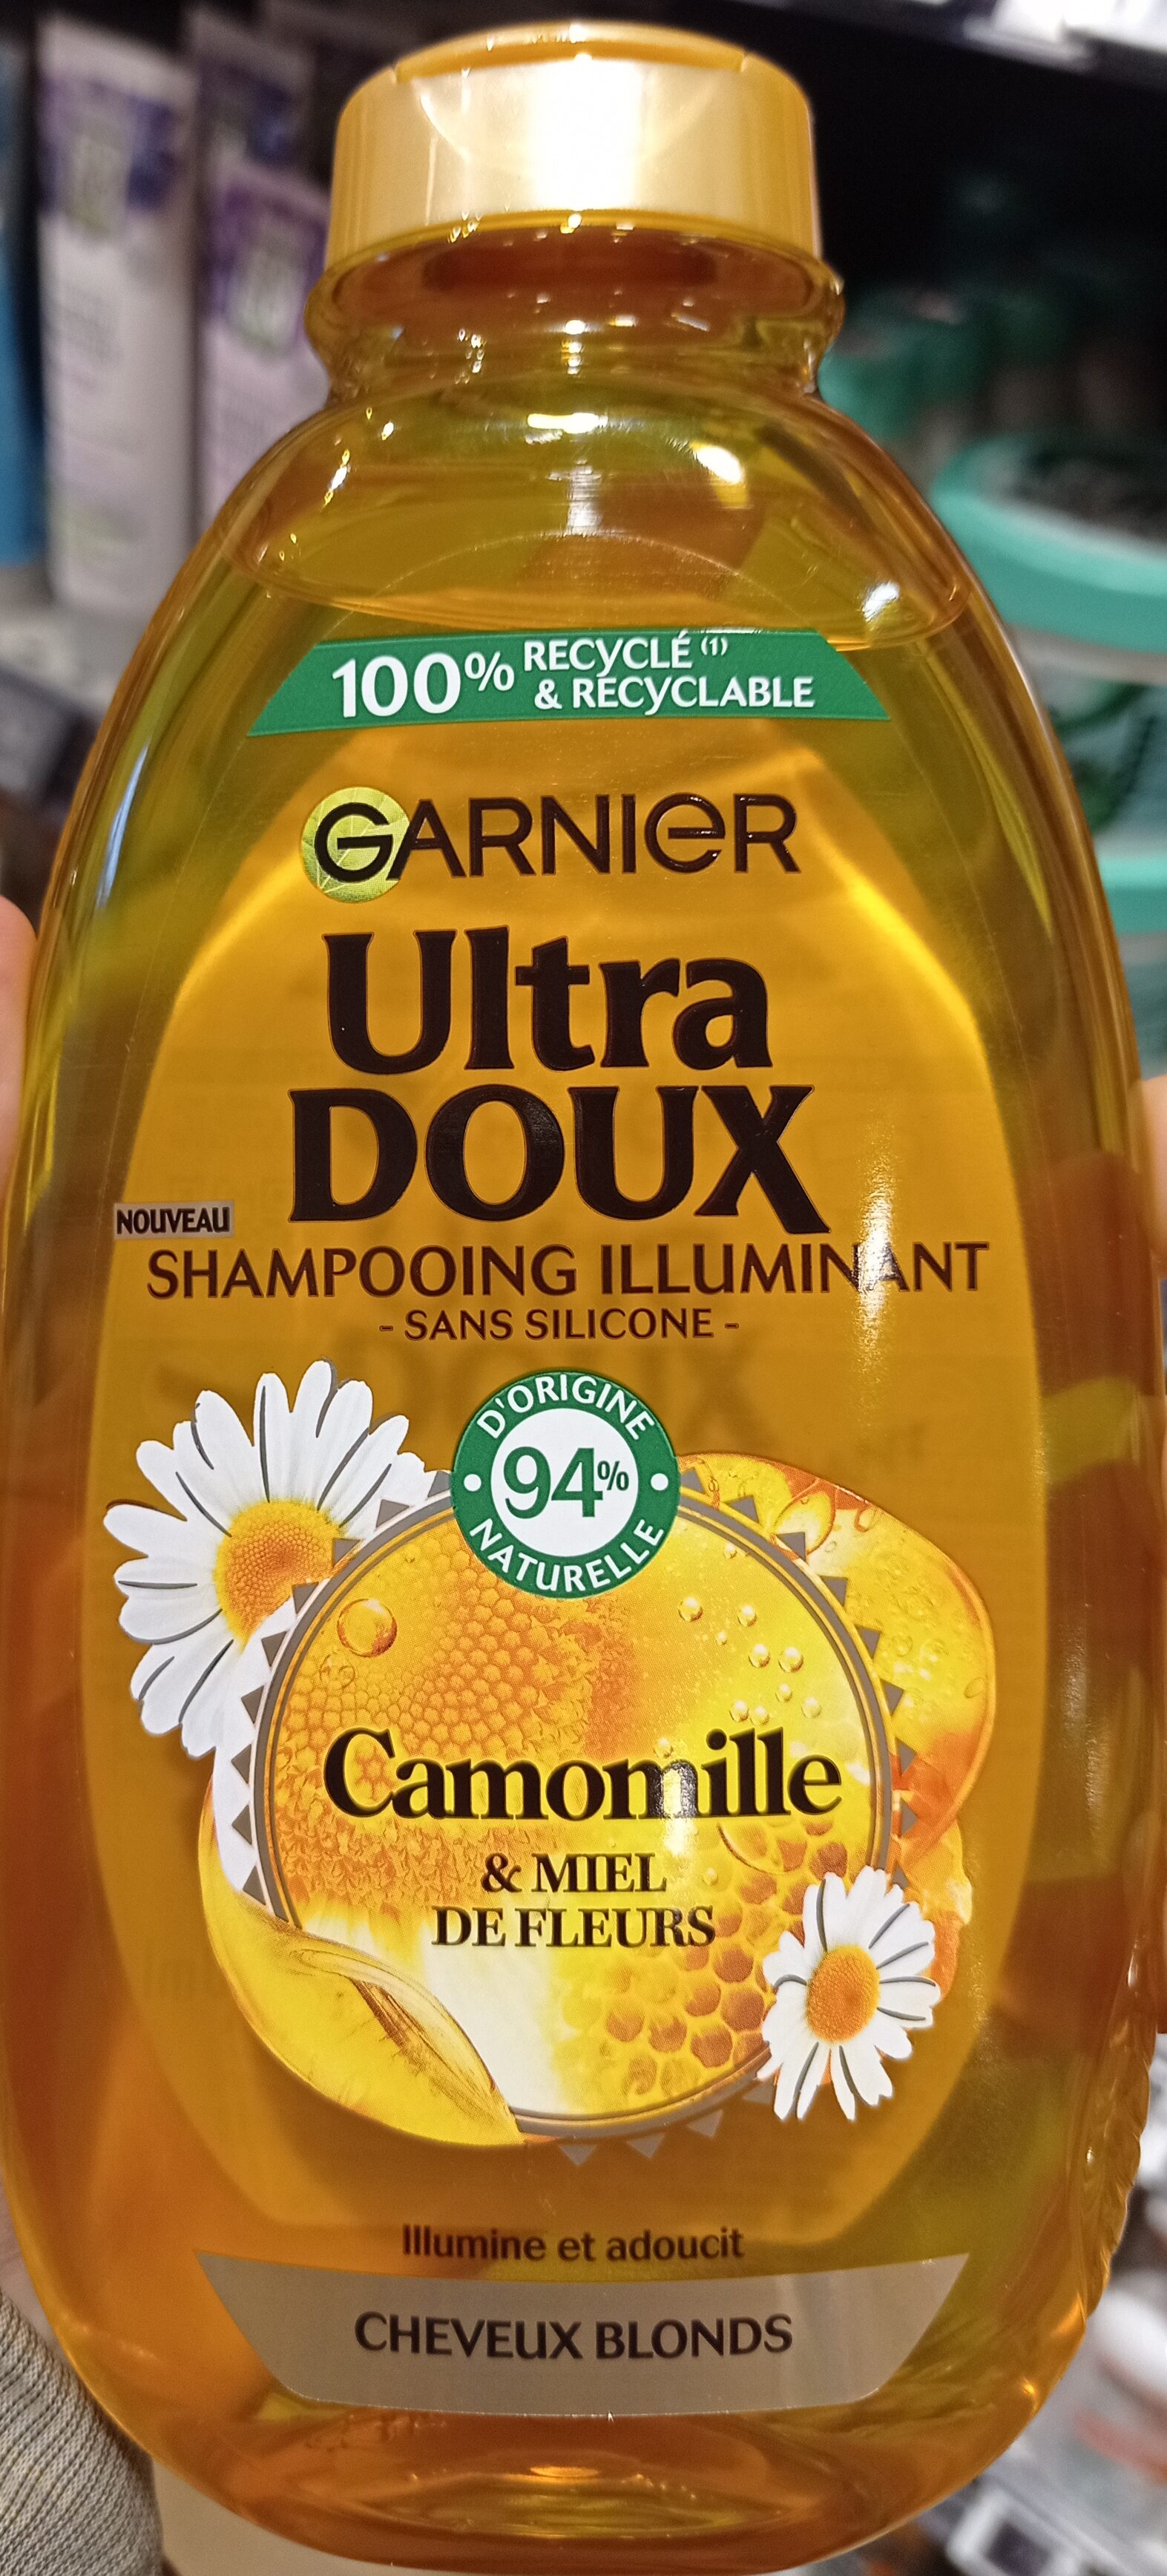 shampoing illuminant, camomille et miel de fleurs - Produit - fr